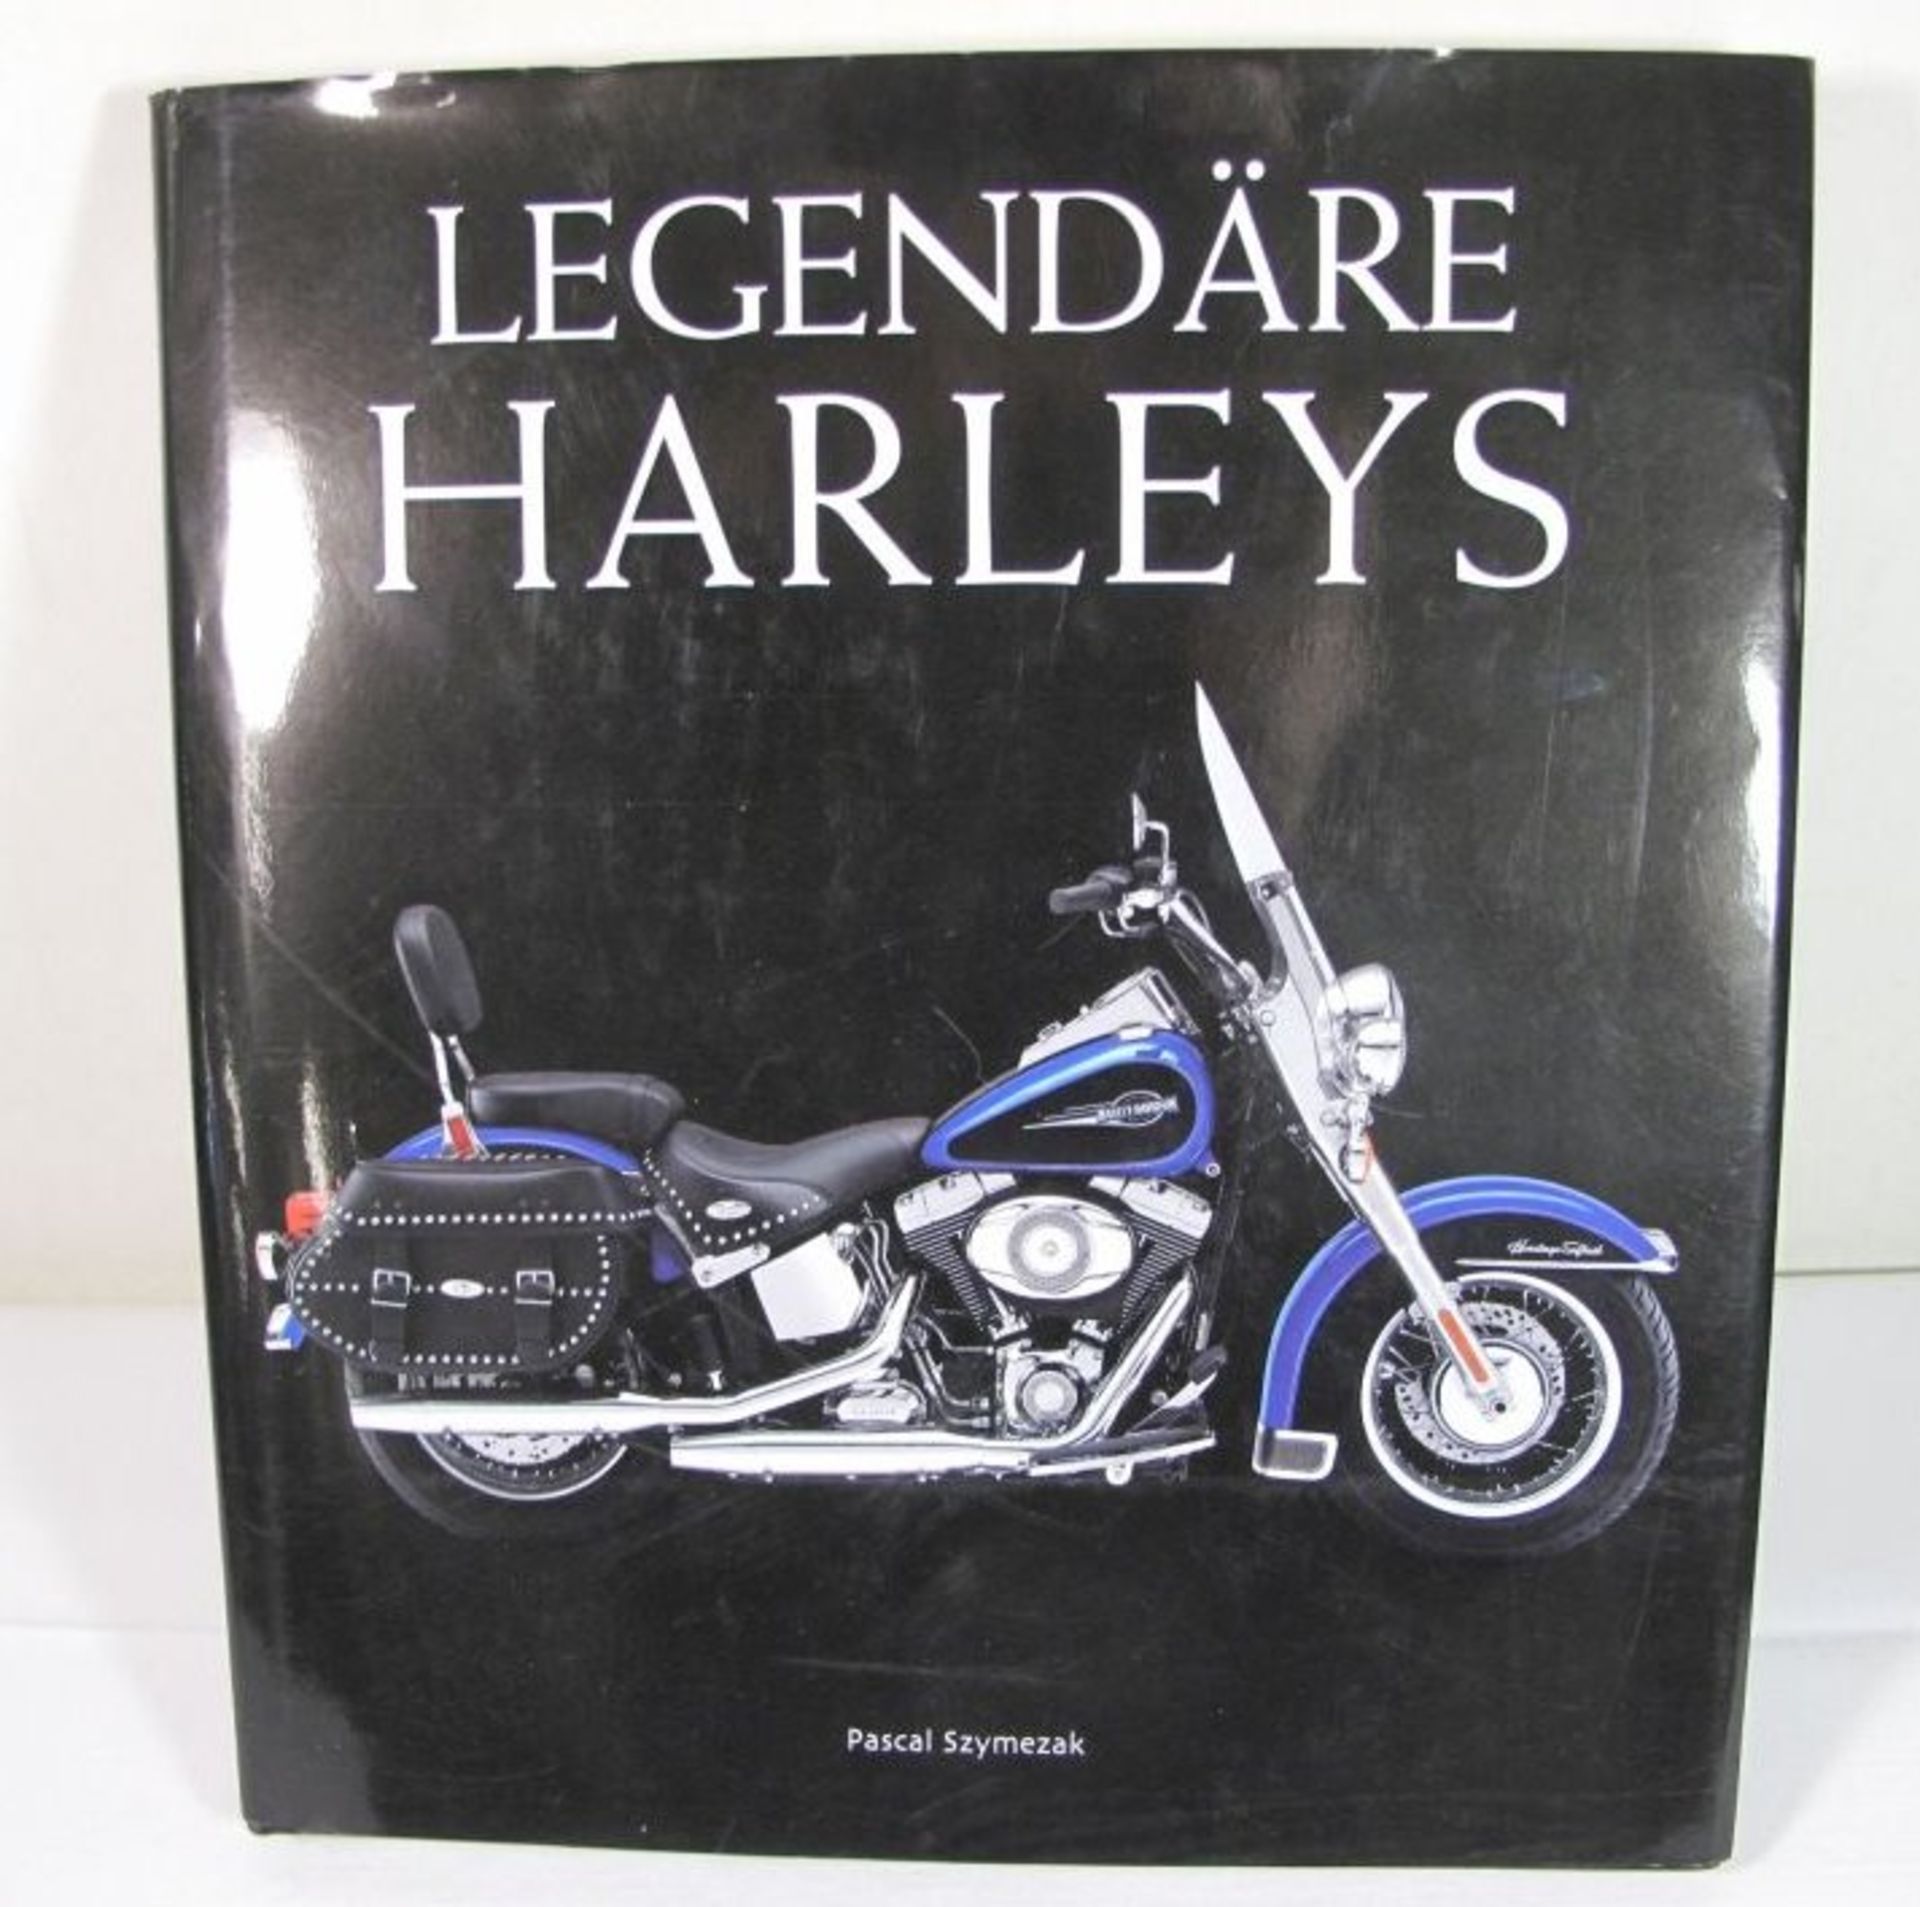 Legendäre Harley's, Pascal Szymezak, 201